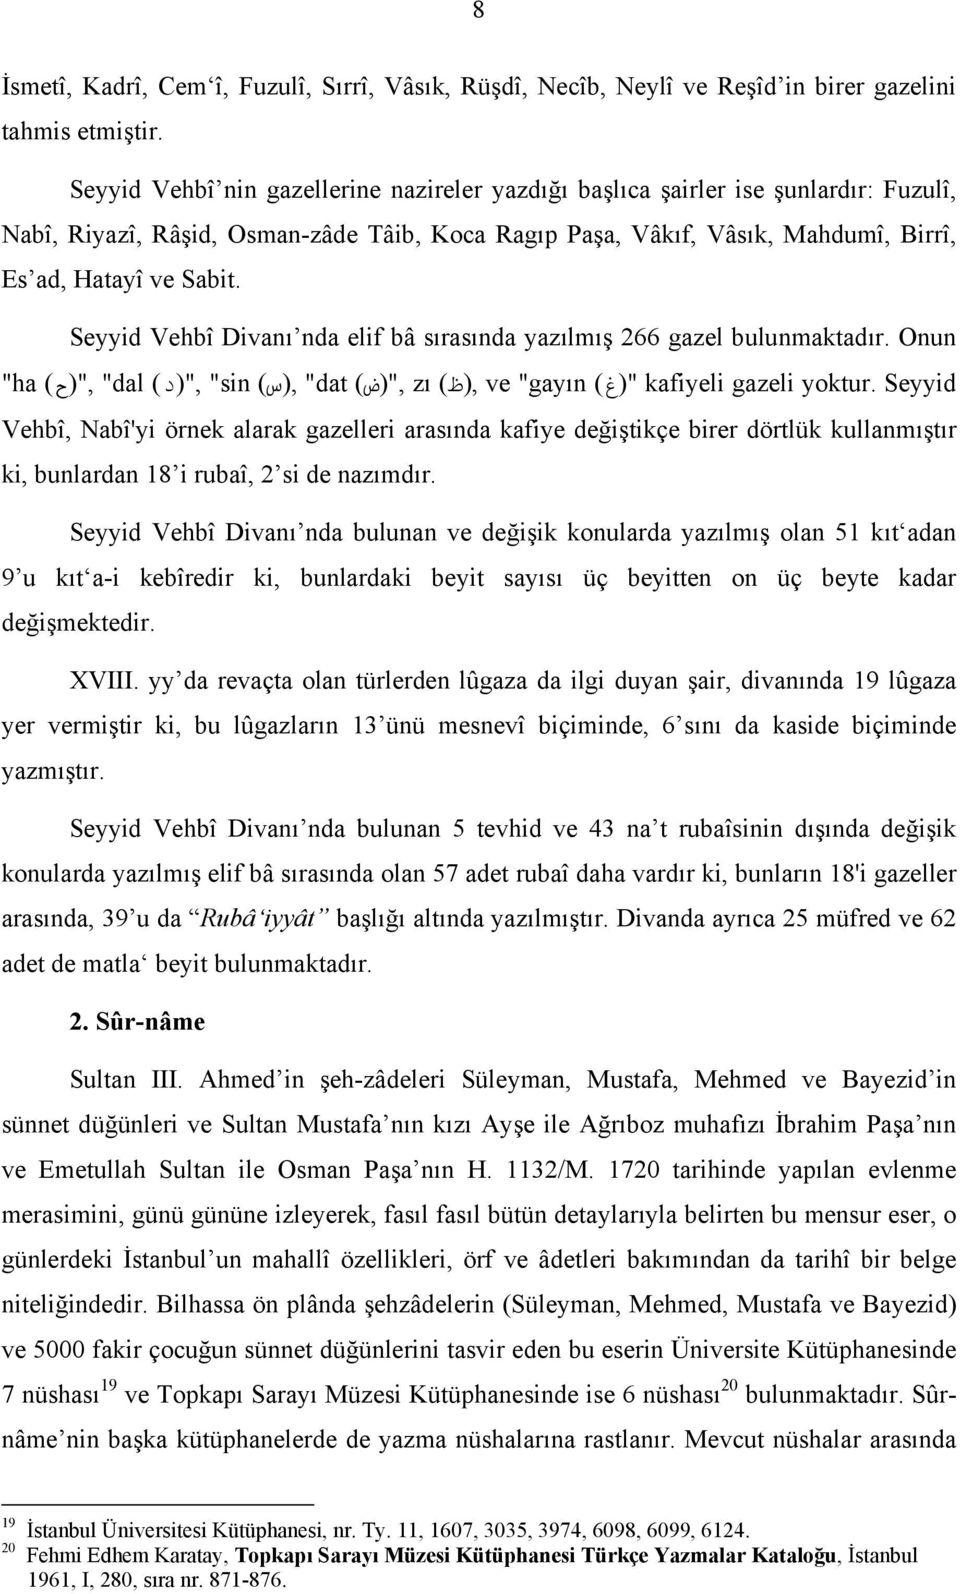 Seyyid Vehbî Divanı nda elif bâ sırasında yazılmış 266 gazel bulunmaktadır. Onun "ha,"(ح) "dal,"(د) "sin,(س) "dat,"(ض) zı,(ظ) ve "gayın "(غ) kafiyeli gazeli yoktur.